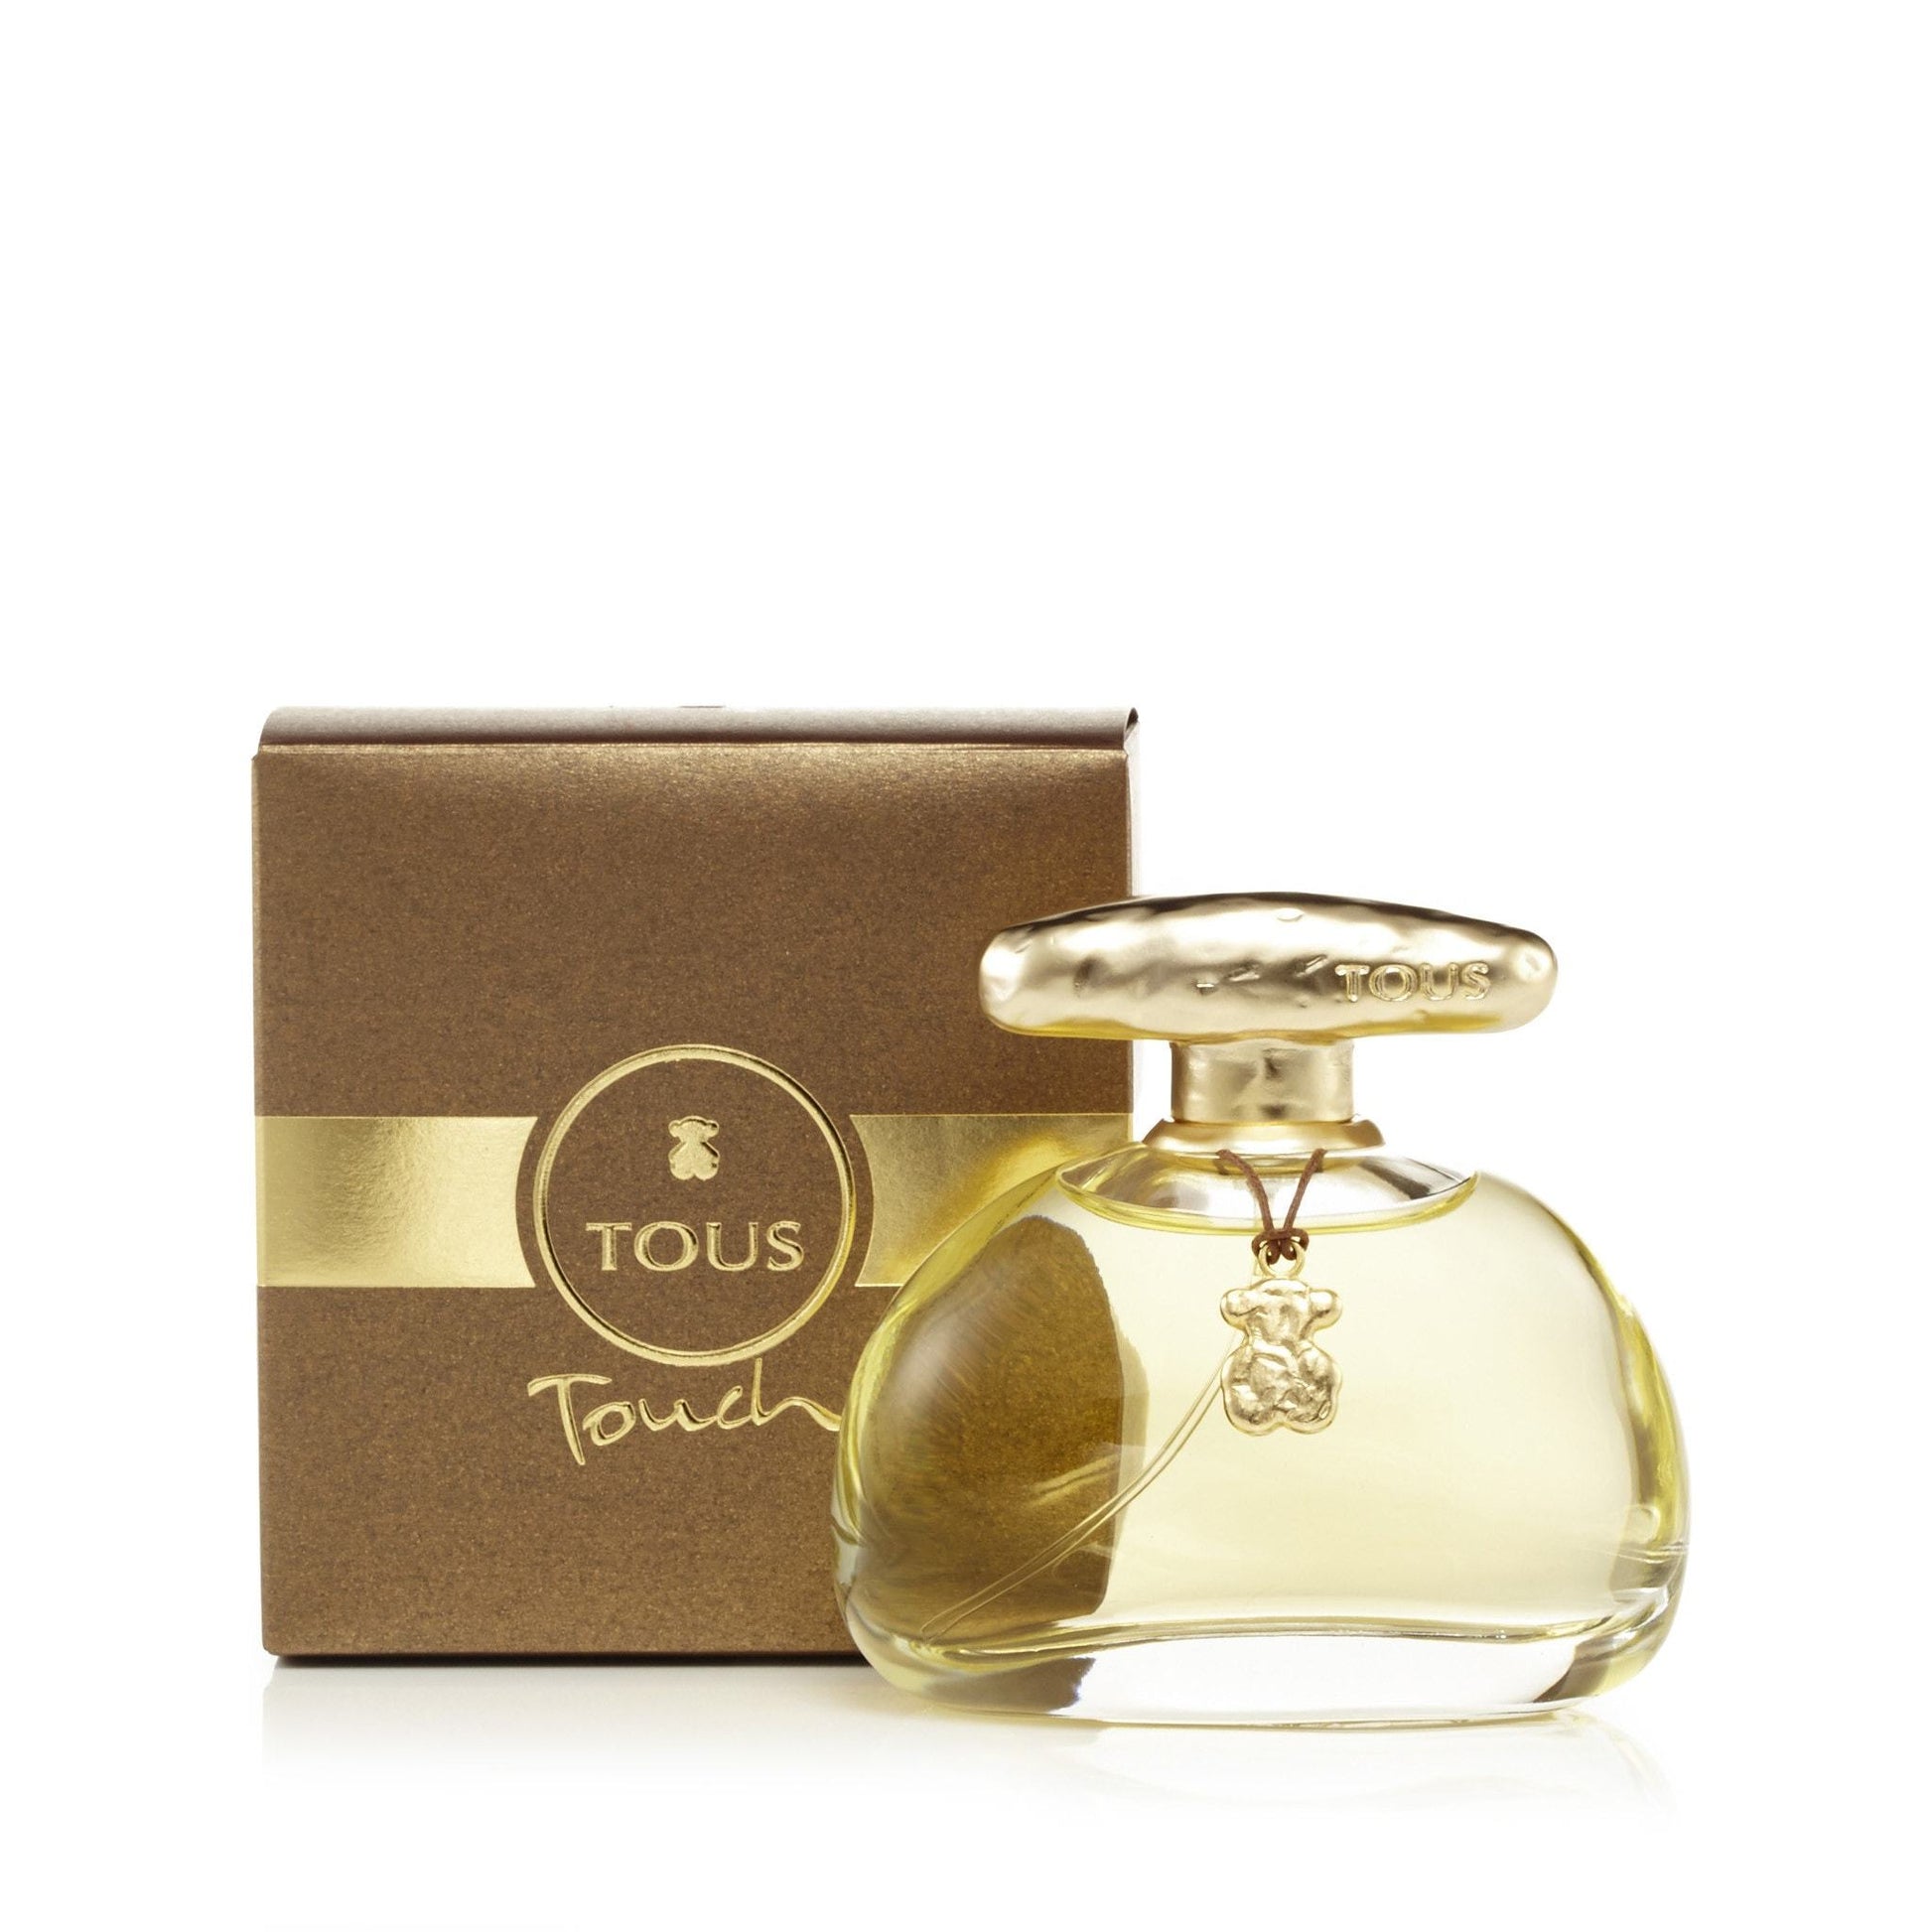 Touch Eau de Toilette Spray for Women by Tous, Product image 2